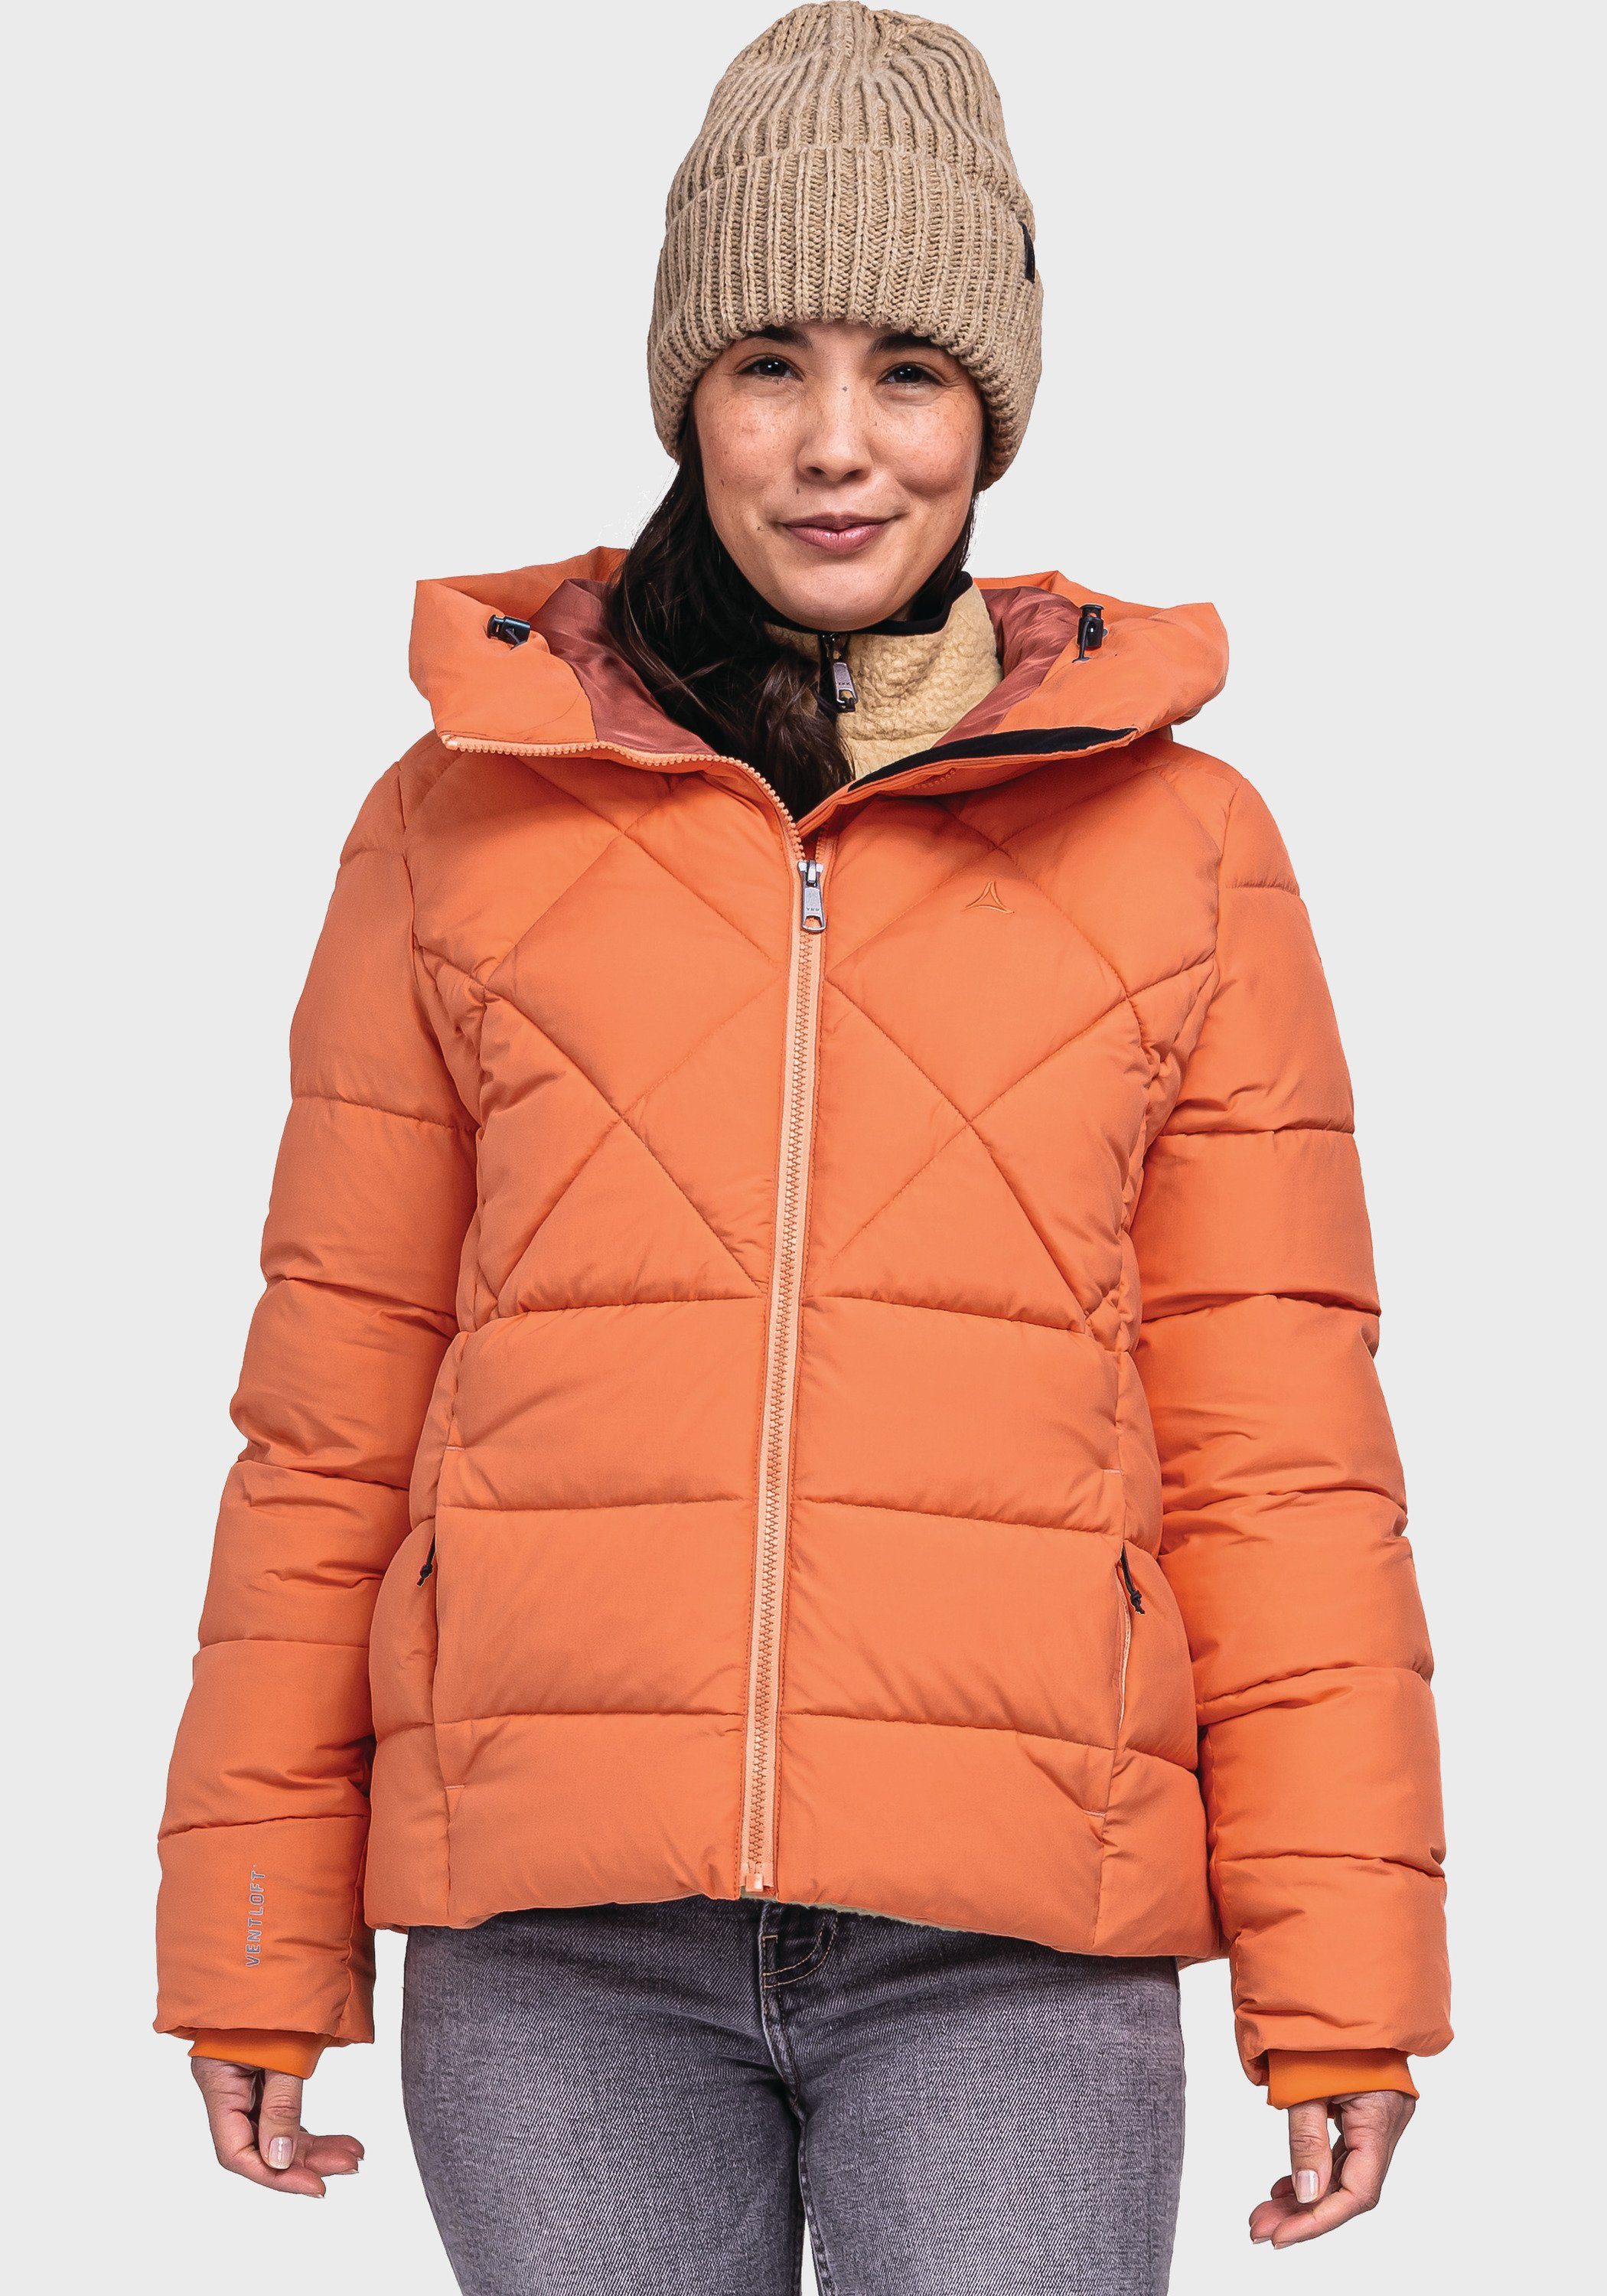 L Outdoorjacke orange Ins Boston Jacket Schöffel